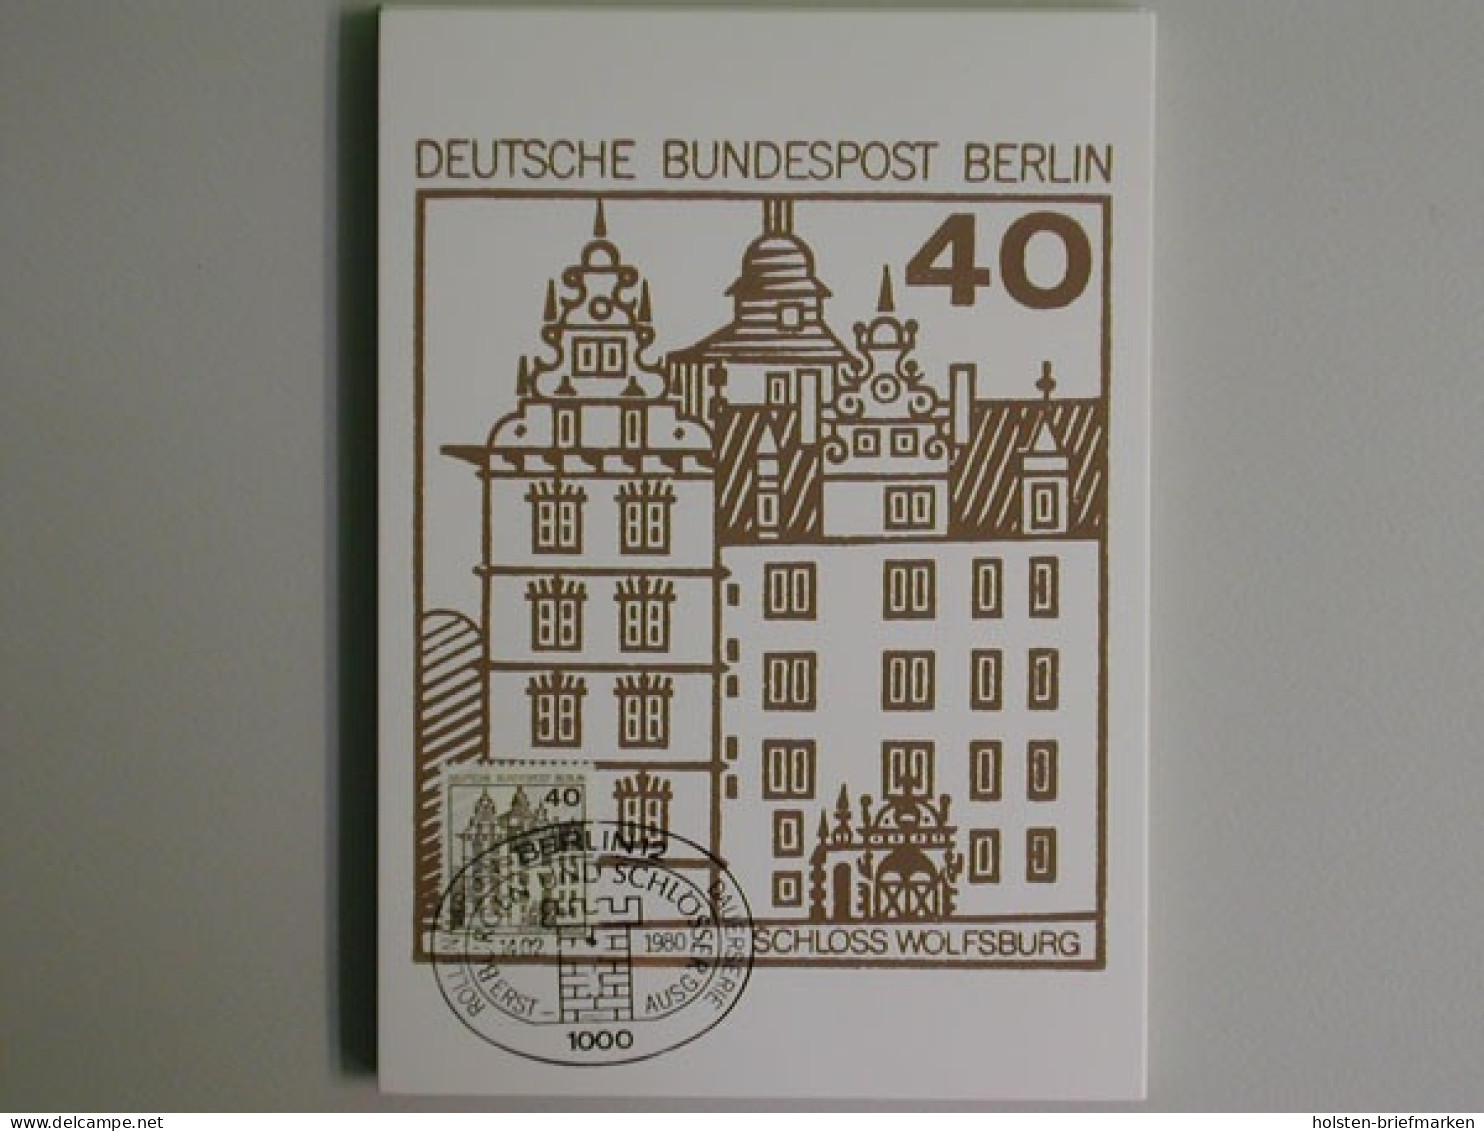 Berlin, Michel Nr.614-636, Maximumkarten - Cartes-Maximum (CM)